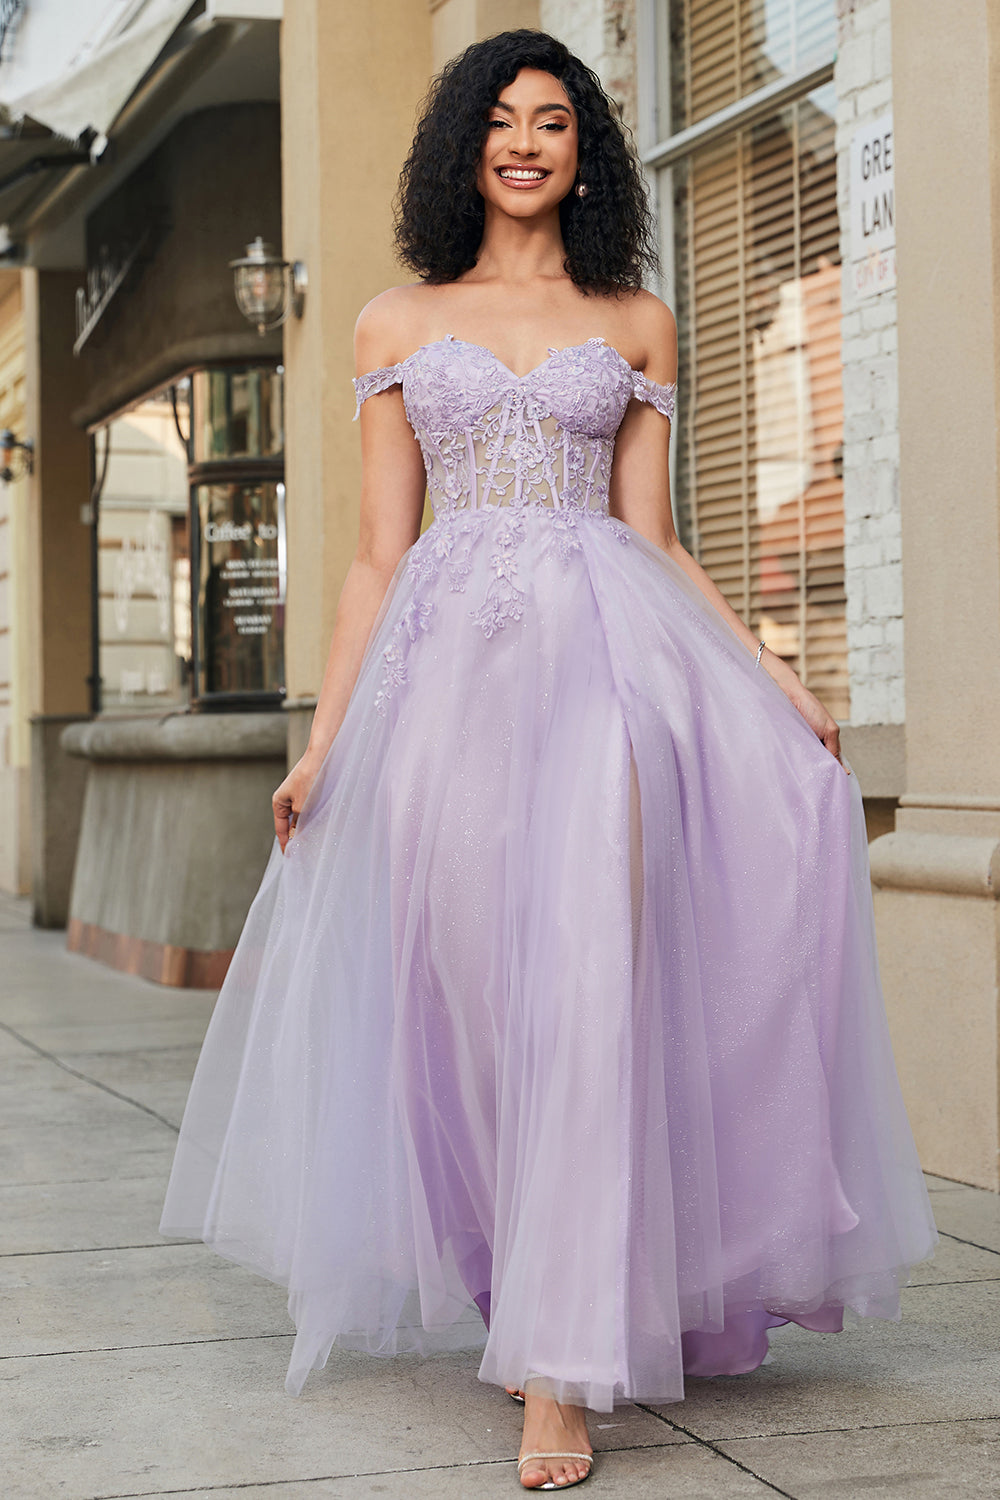 Purple lace up corset prom dress